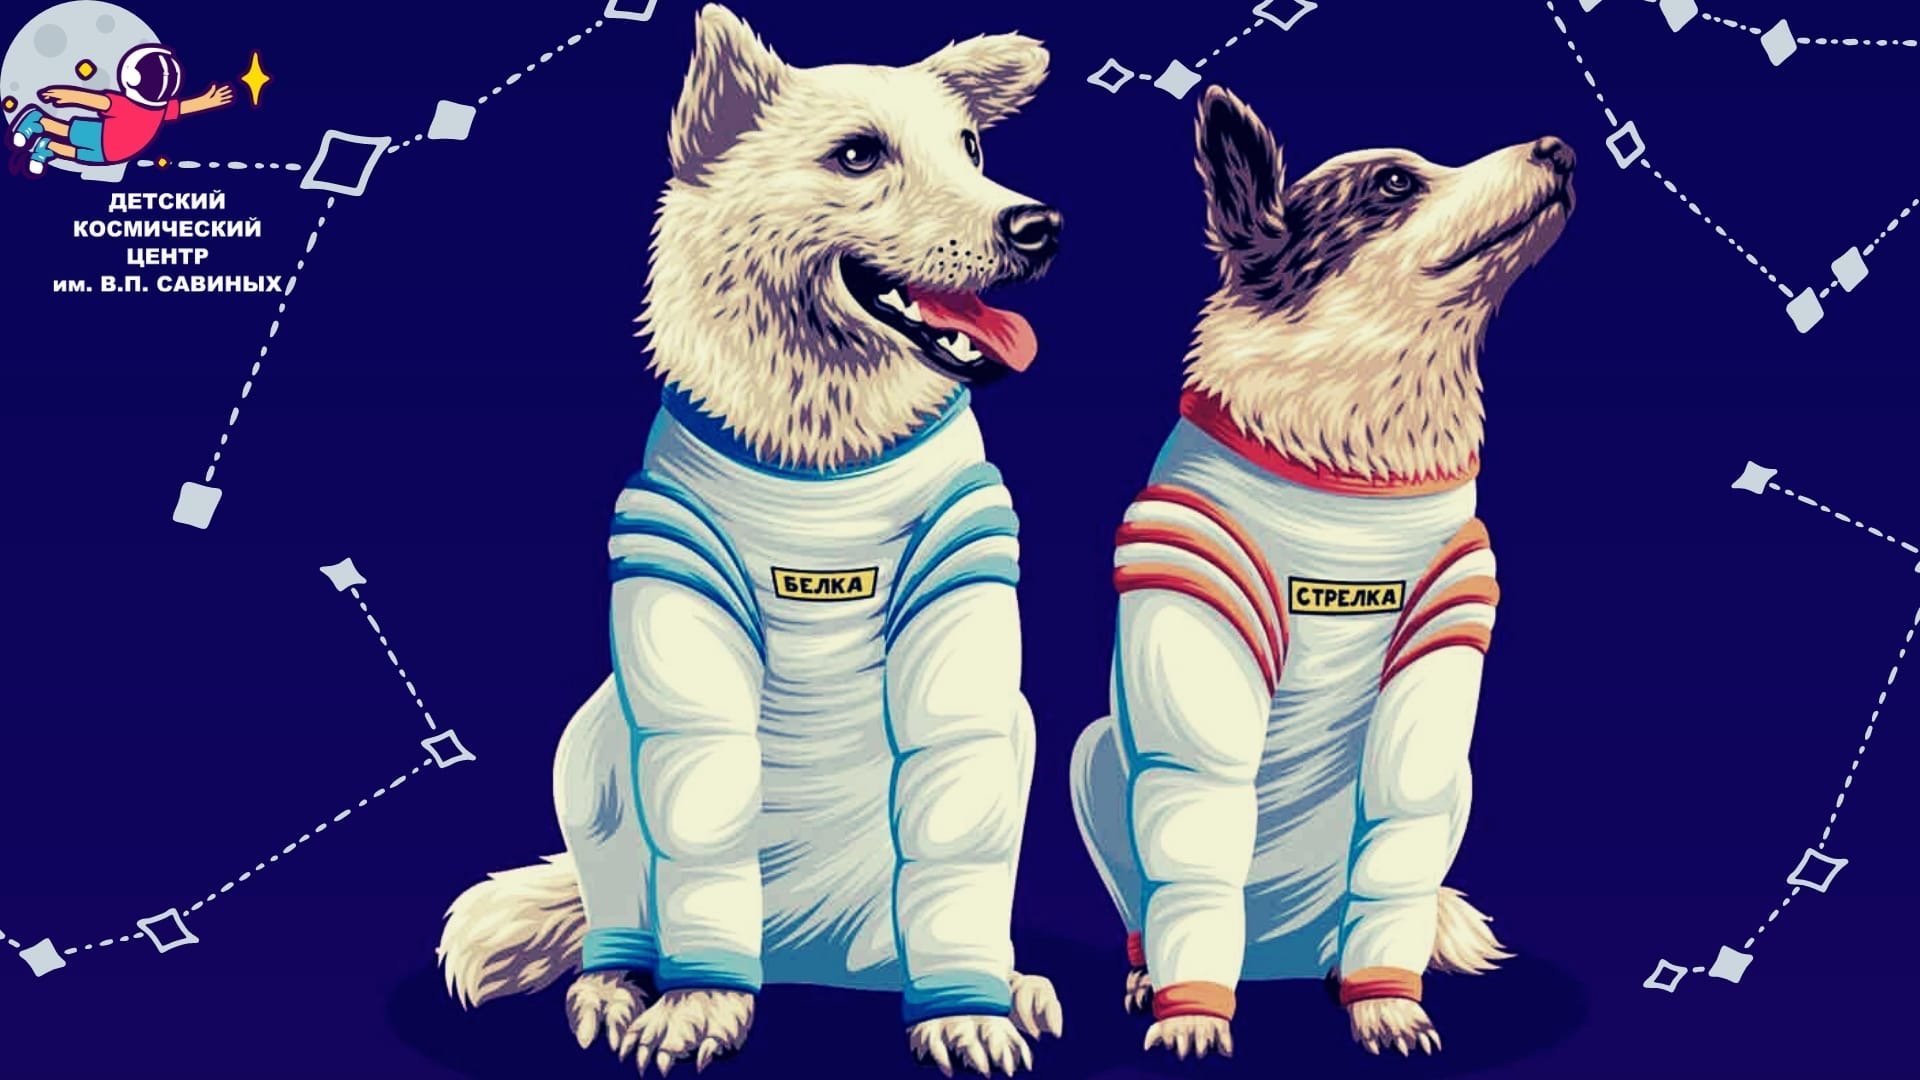 Картинка белка и стрелка. Белкаистрелка (собака-космонавт). Полет белки и стрелки в космос. Собаки-космонавты белка и стрелка-1. Собака белка и стрелка в космосе для детей.